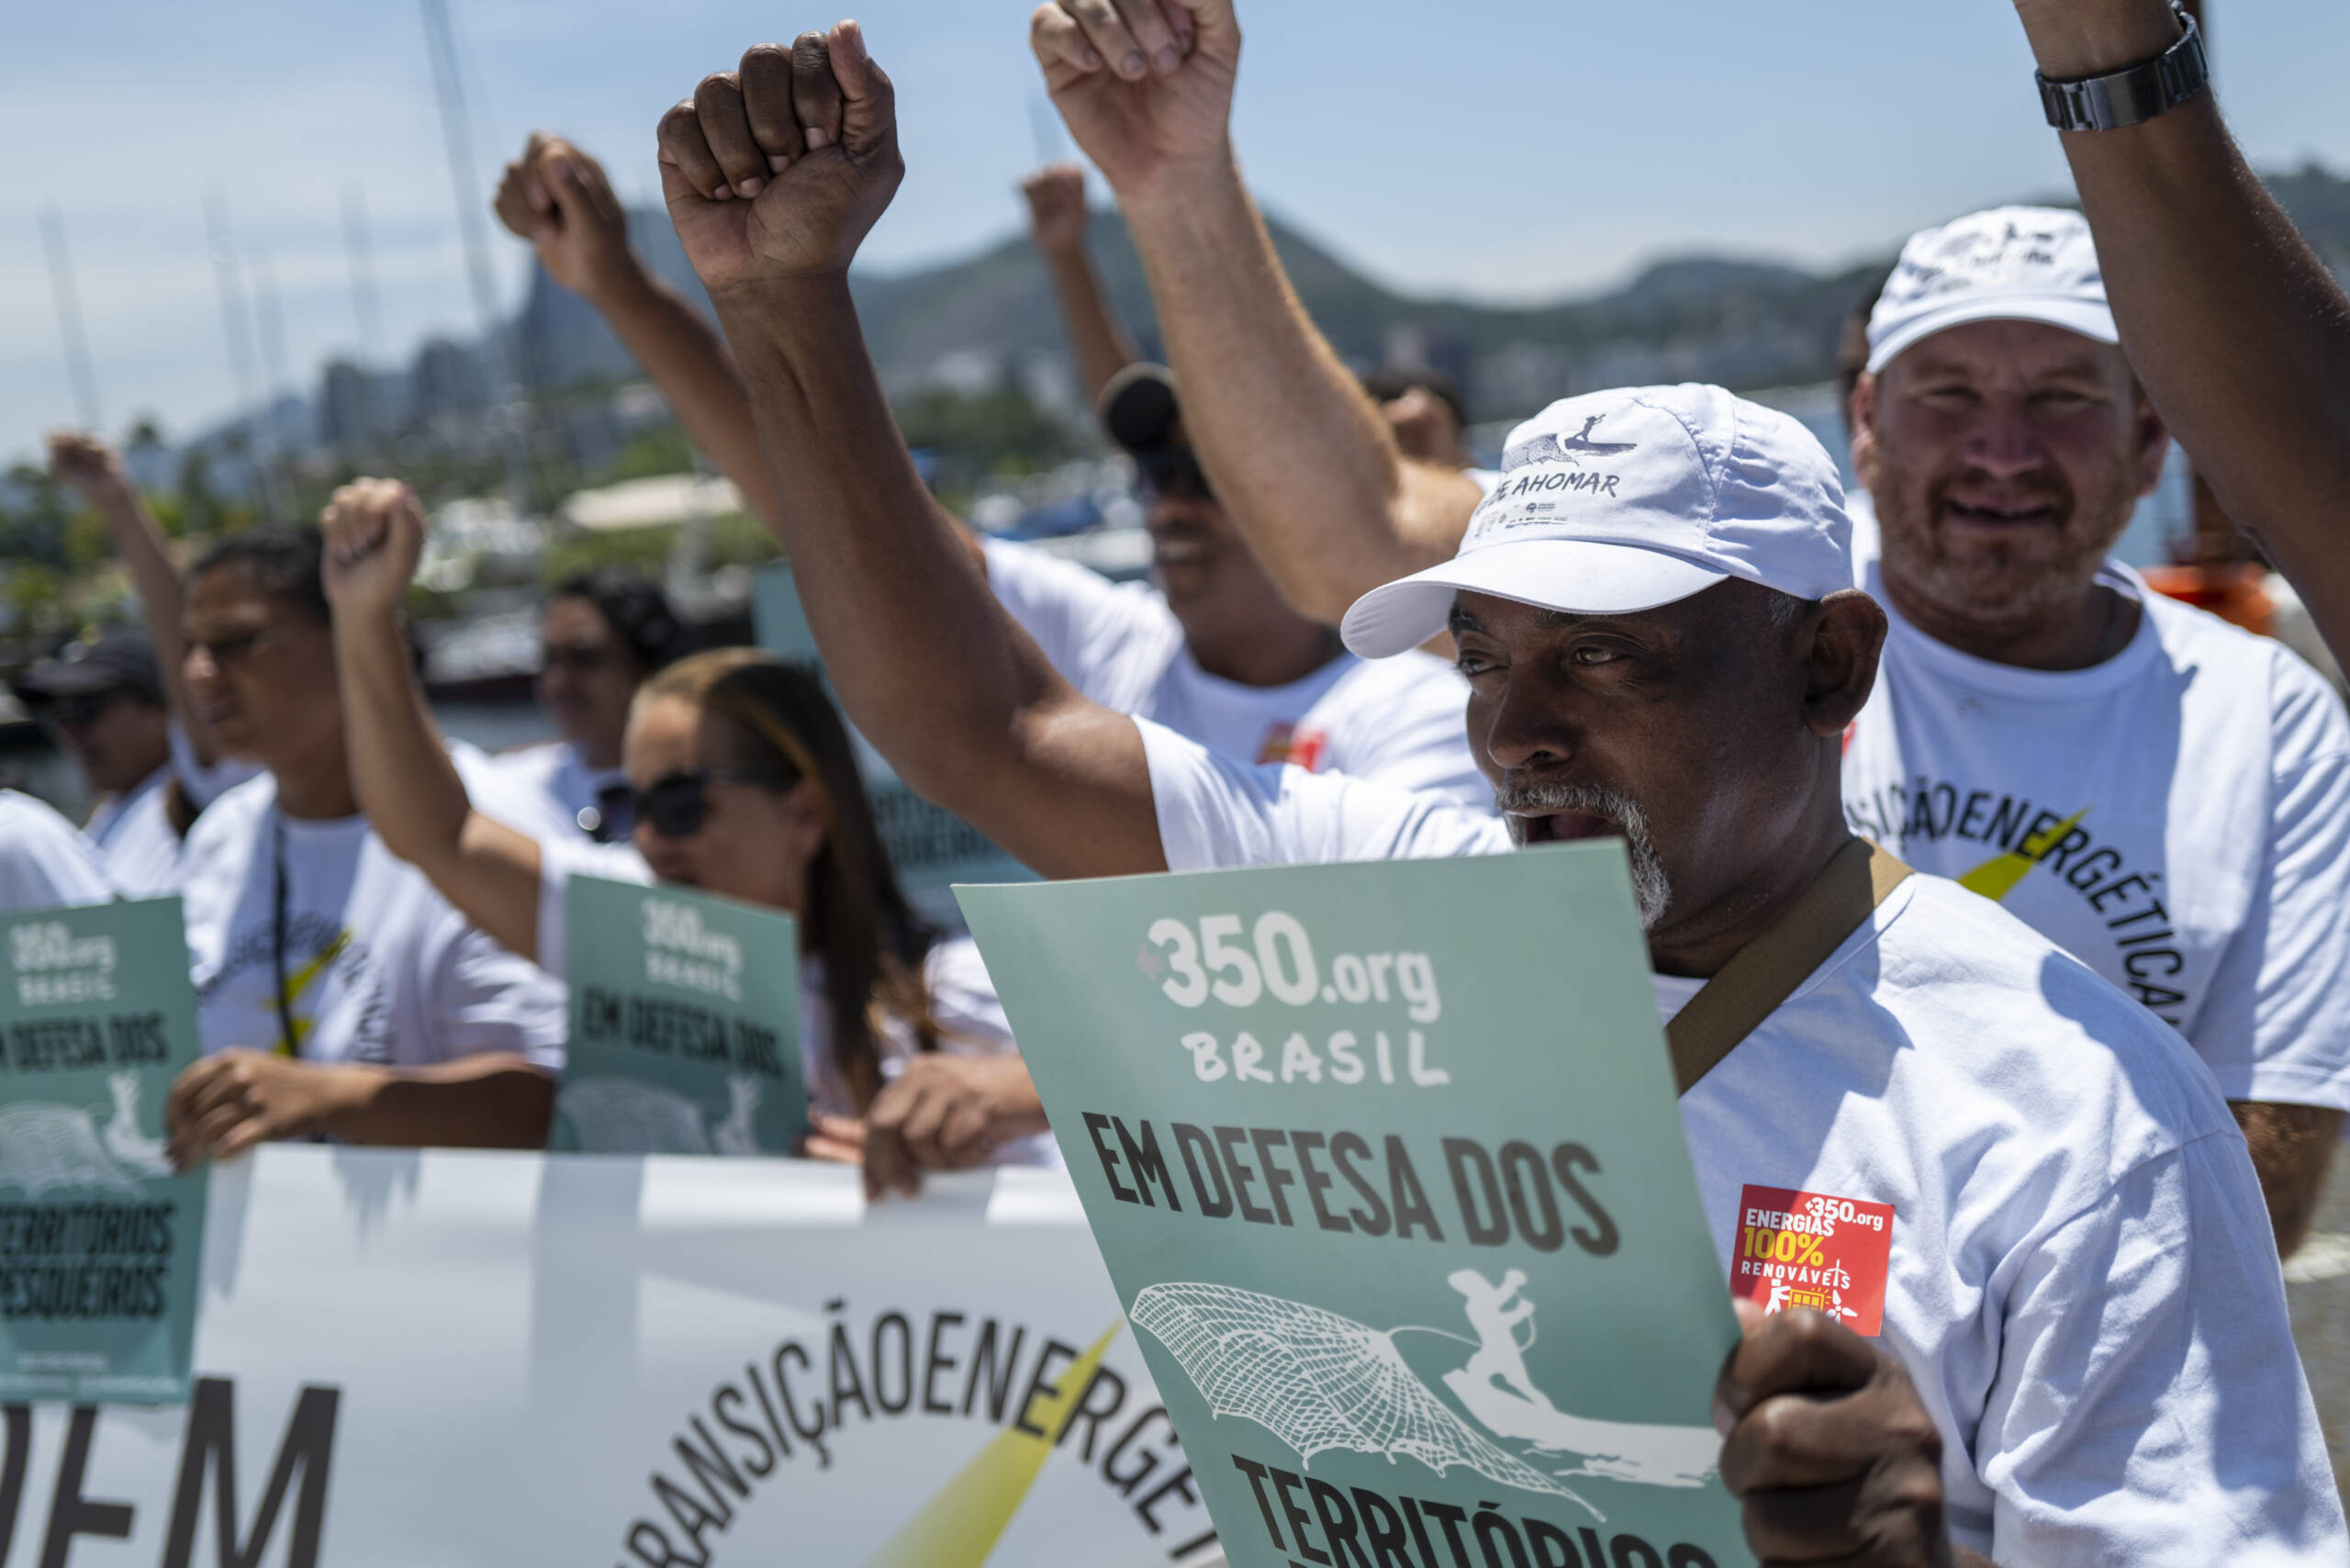 Rio de Janeiro, Brasilien, 3.11.: Fischer*innen protestieren vor der Guanabara-Bucht für ein Ende der staatlichen Subventionen für Öl und Gas und mehr Investitionen für erneuerbare Energien. Bildnachweis: Lucas Landau